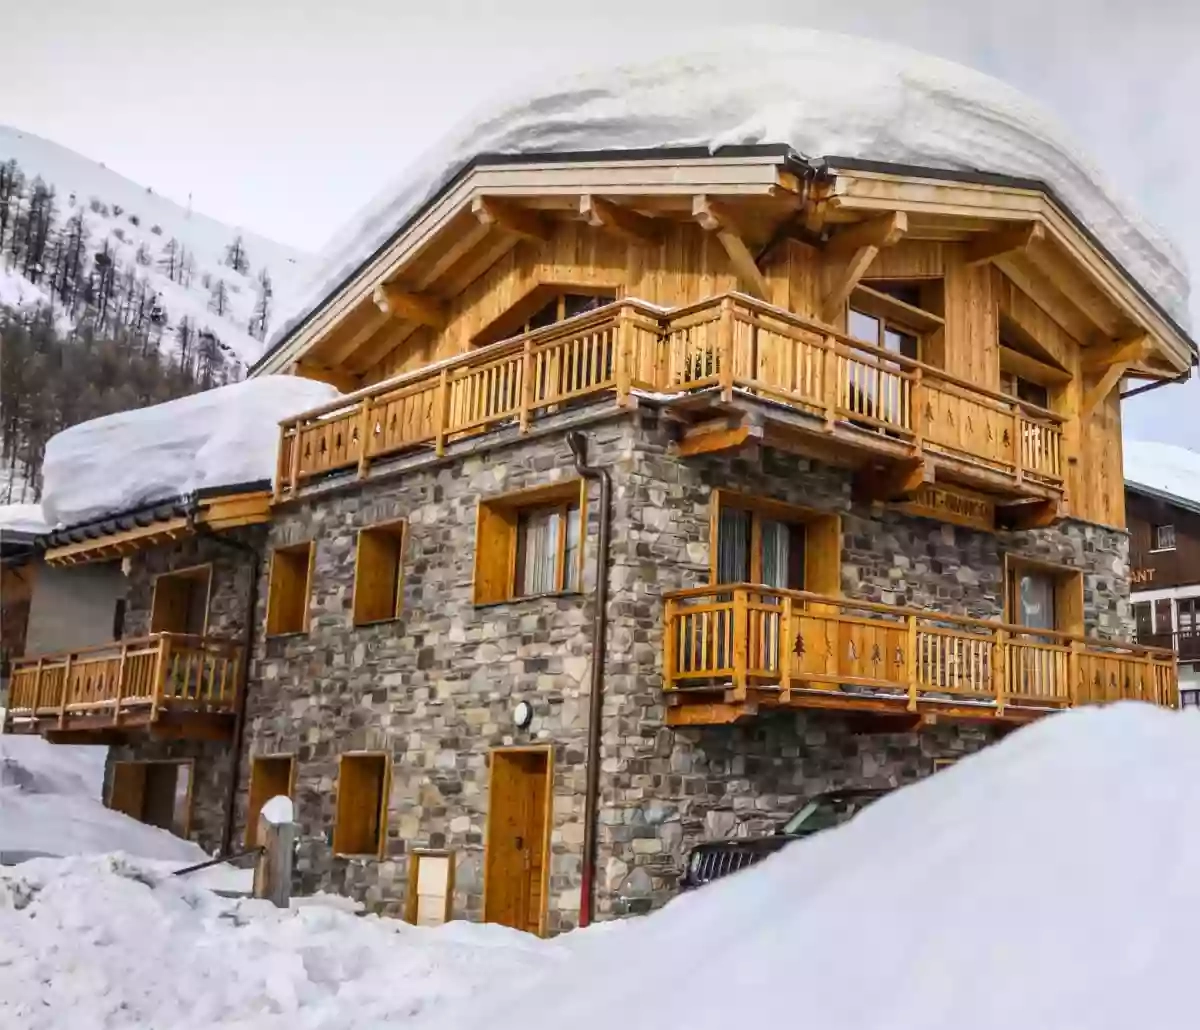 Chalet Monte Bianco - Location Chalet Tignes (Location Chalet Ski, Ski Chalet Rental)